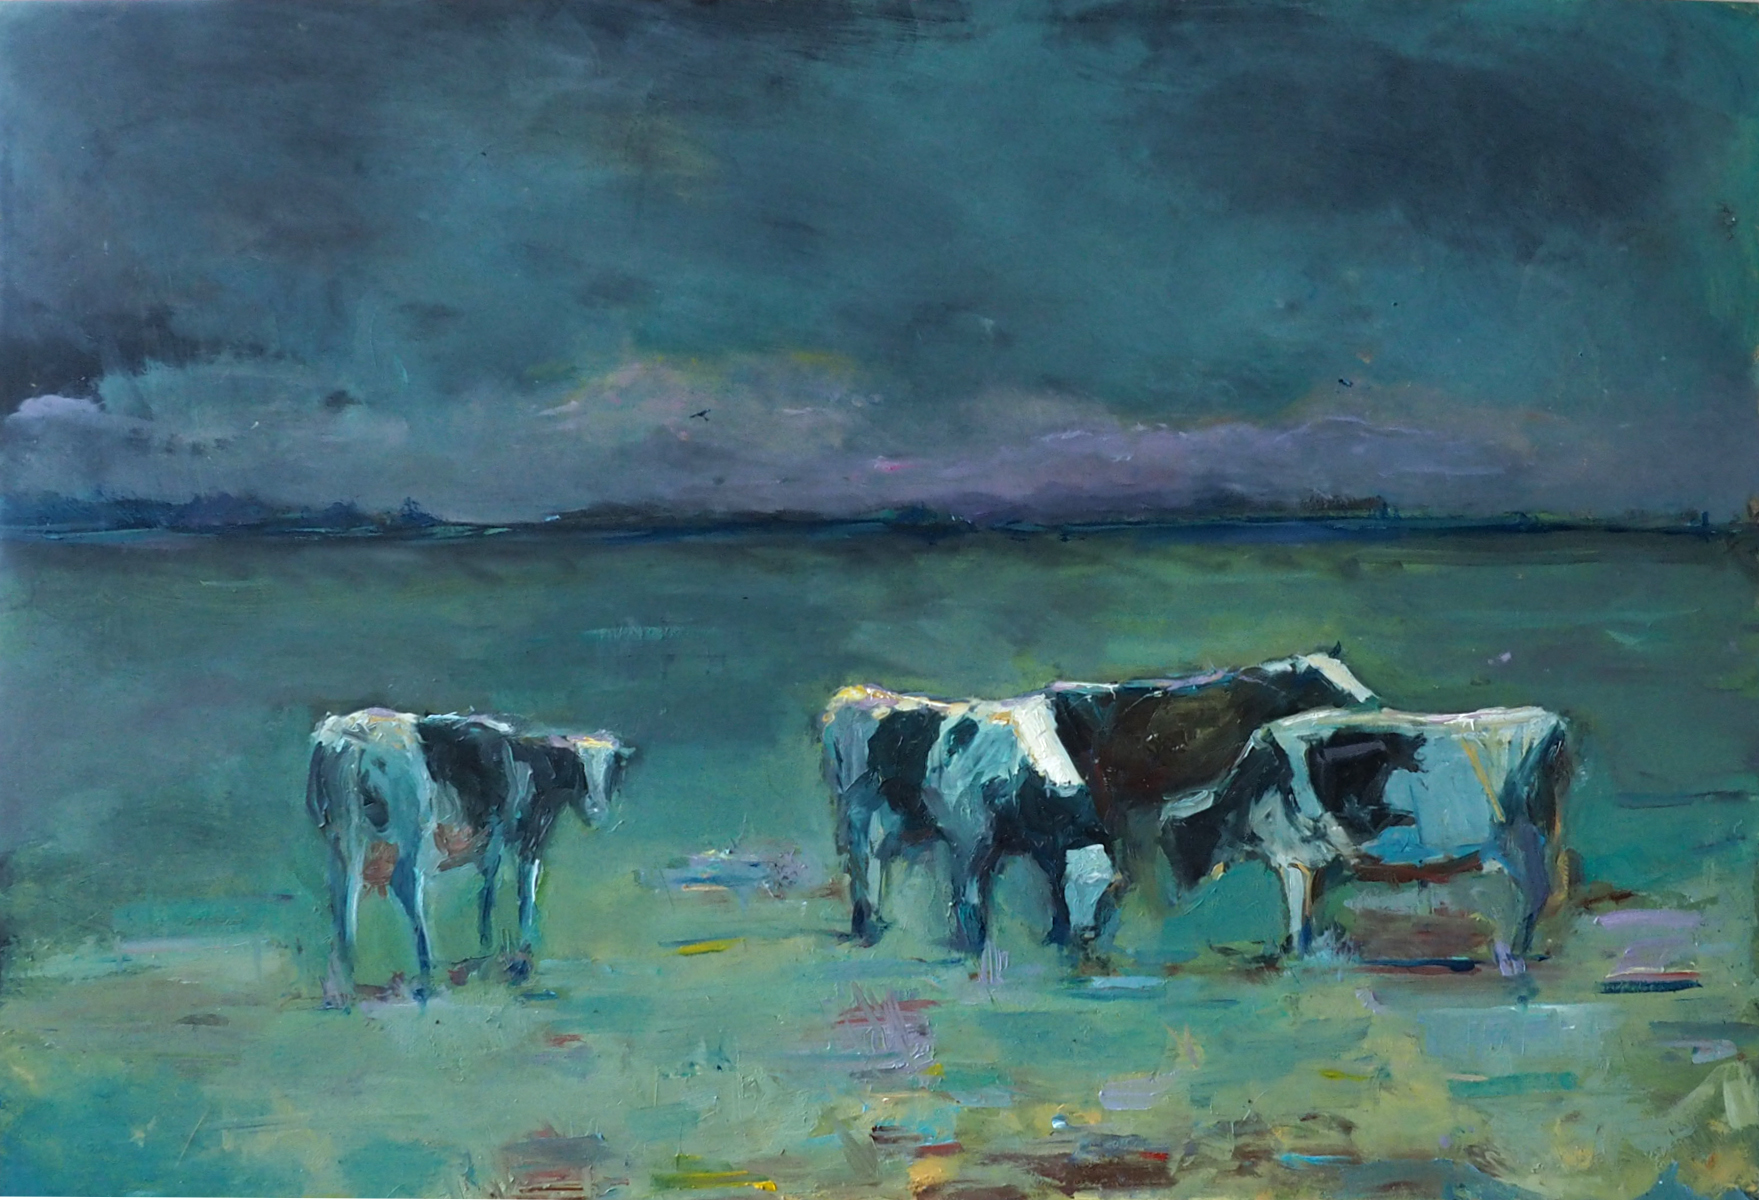 Pejzaż horyzontalny w niebiesko-zielonych barwach. Obraz przedstawia cztery biało-czarne krowy. Krowy pasą się na łące. Za krowami jest niebieskie niebo z ciemnymi chmurami. Na niebie są delikatne różowe obłoki.